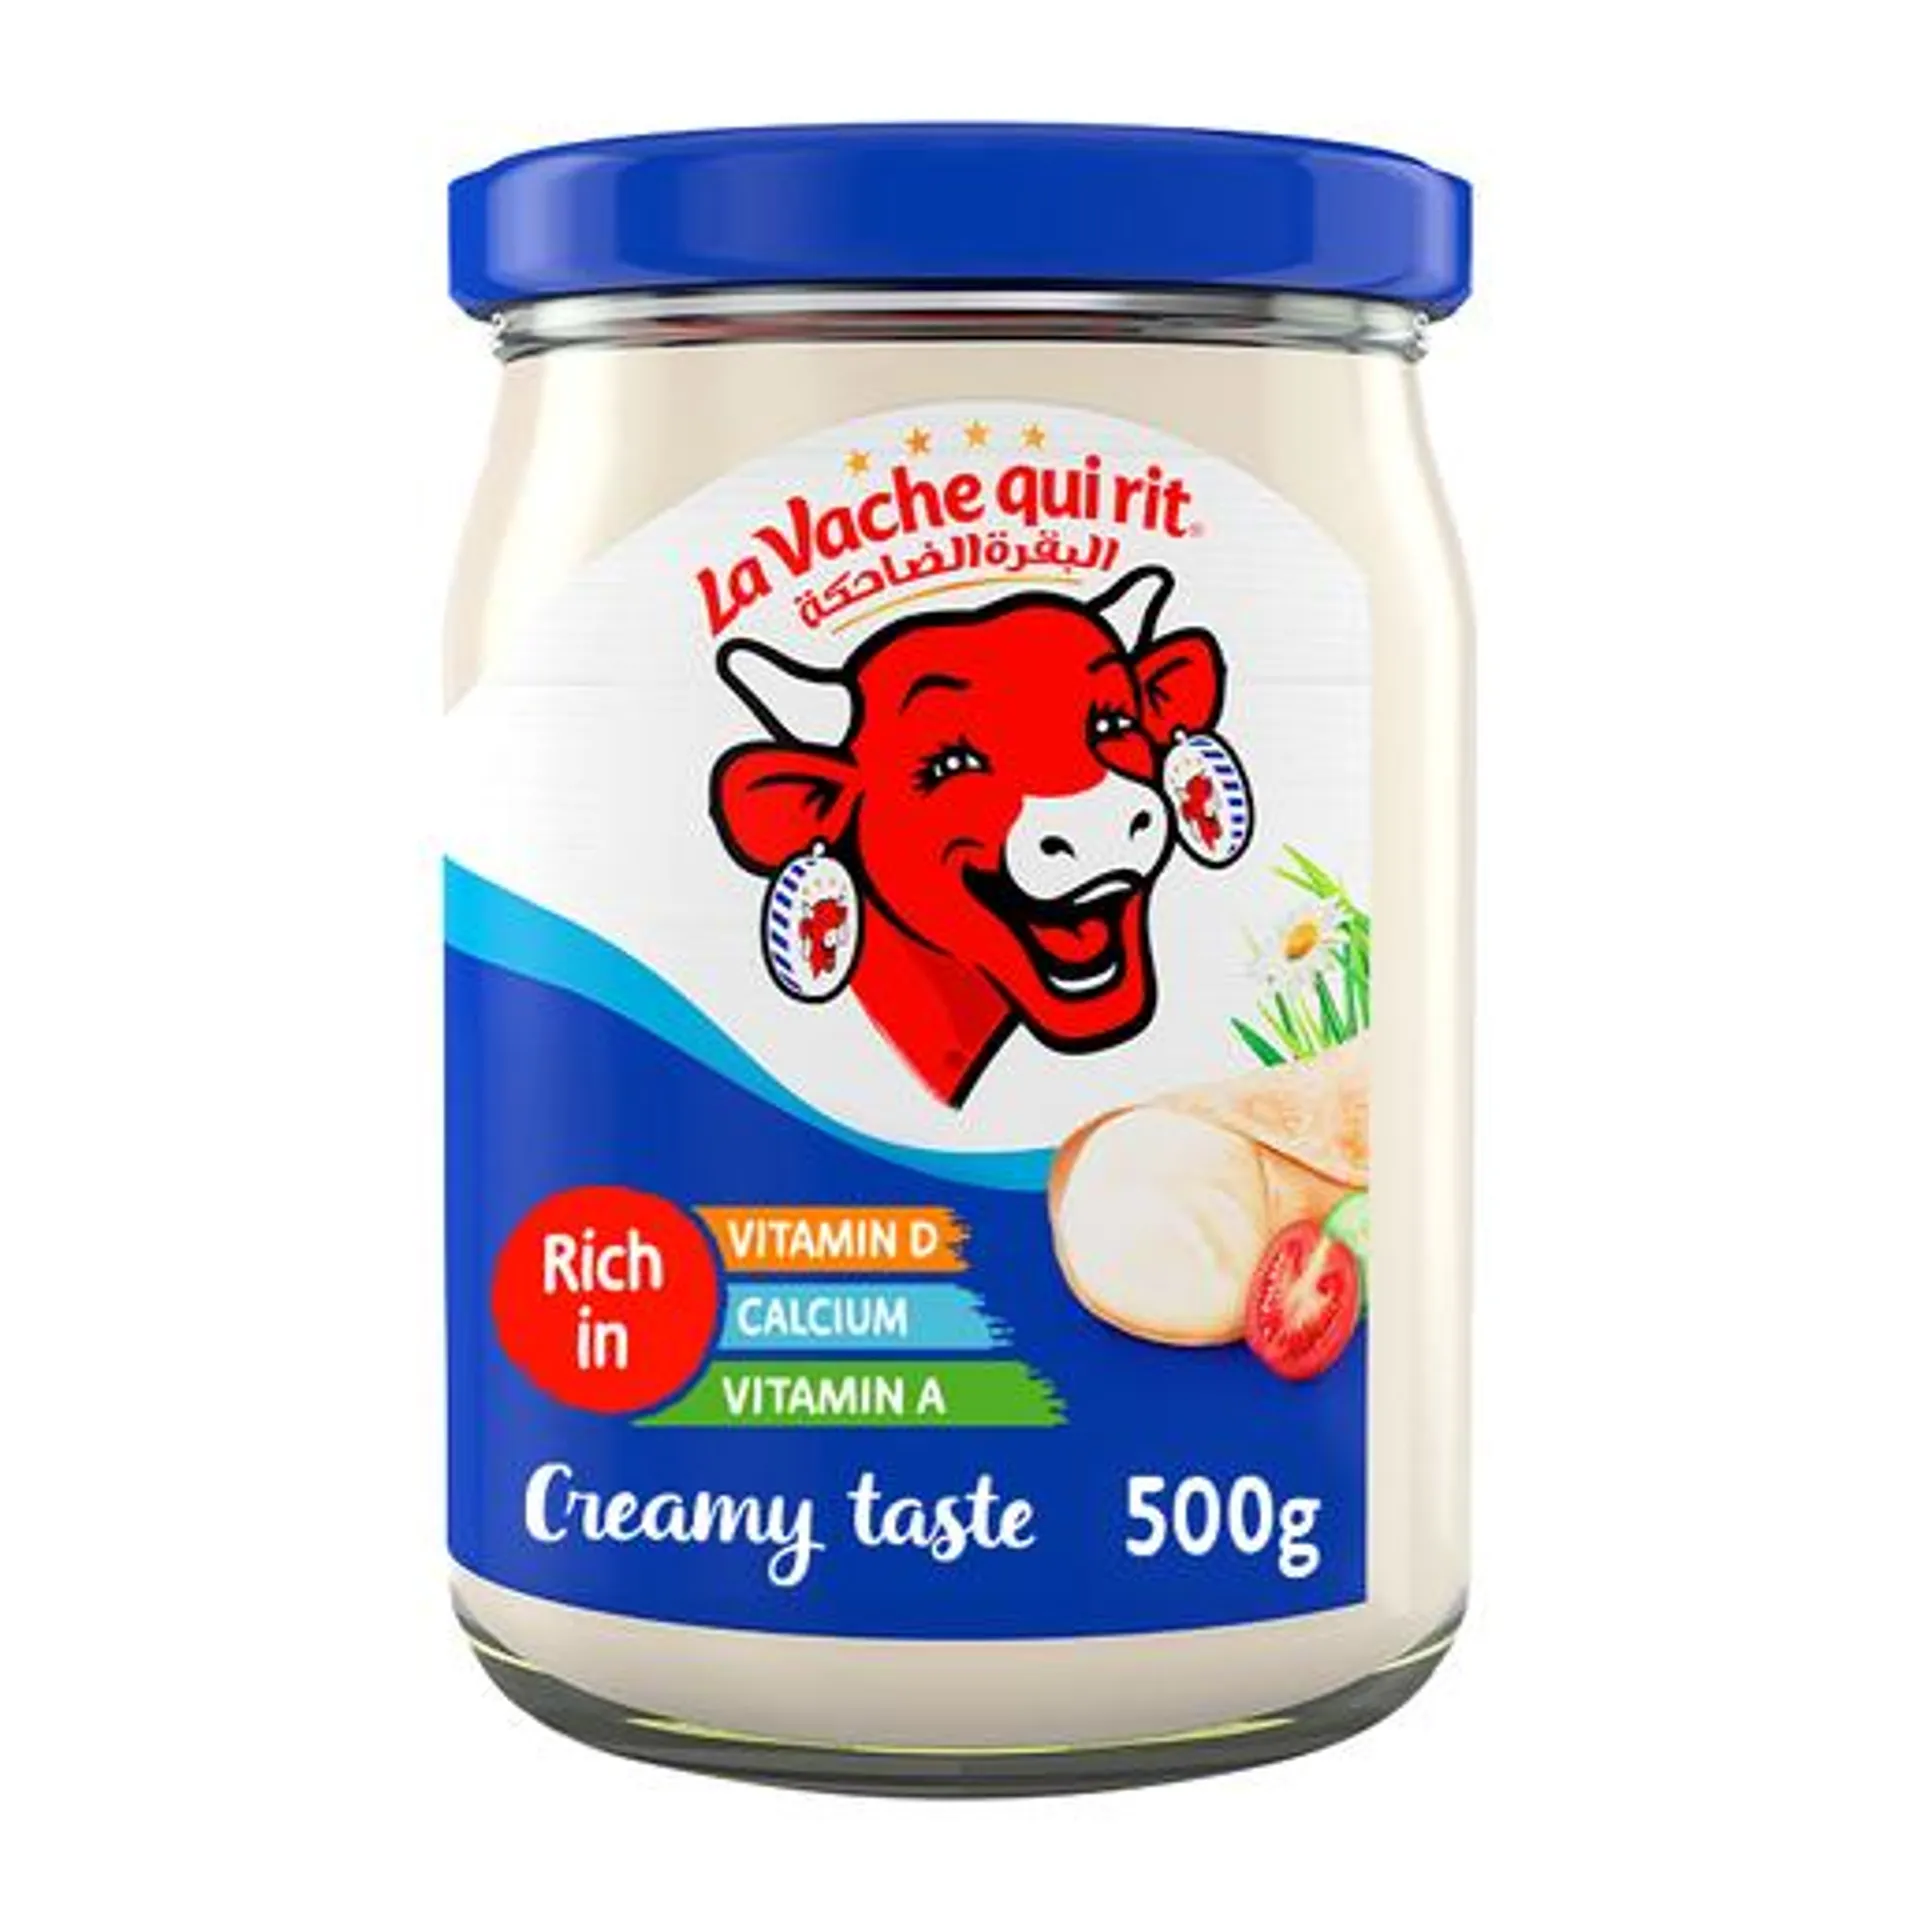 La Vache Qui Rit Cream Cheese